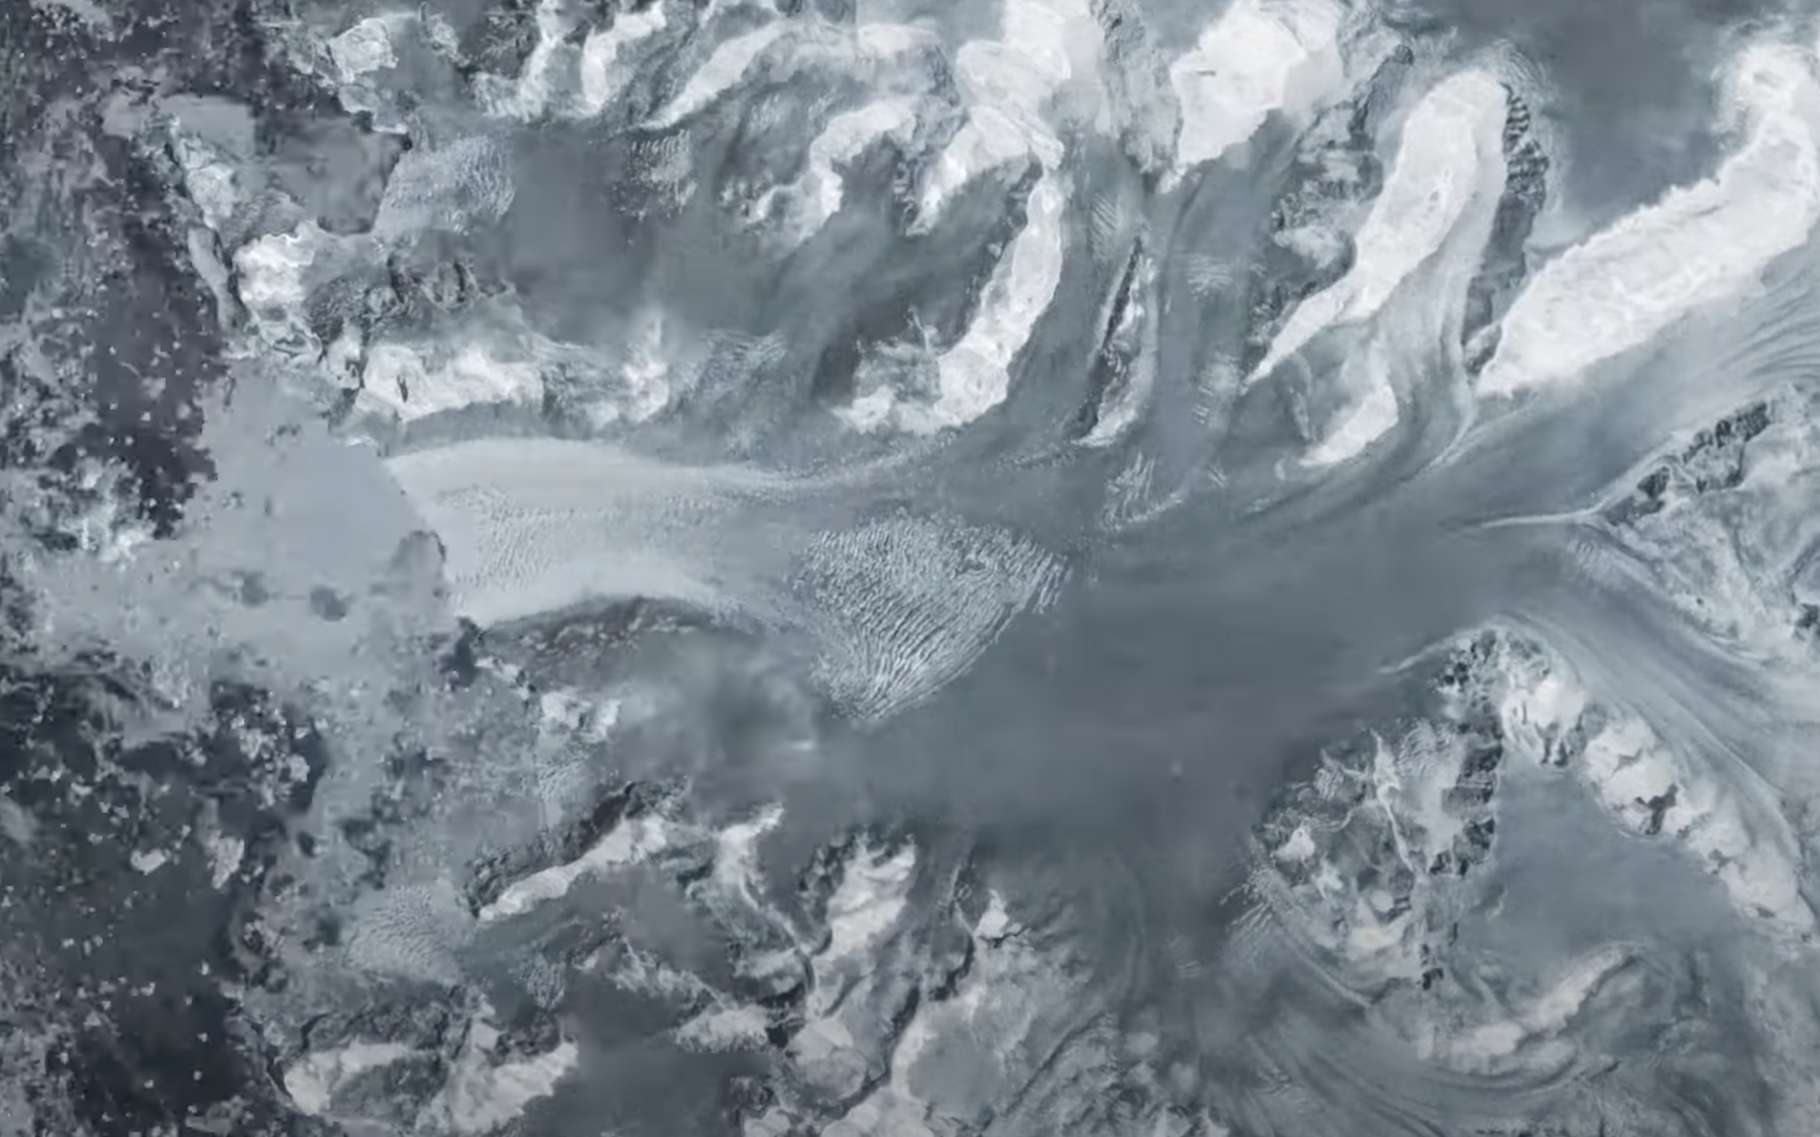 Les satellites montrent une inquiétante fuite en avant des glaciers en Antarctique